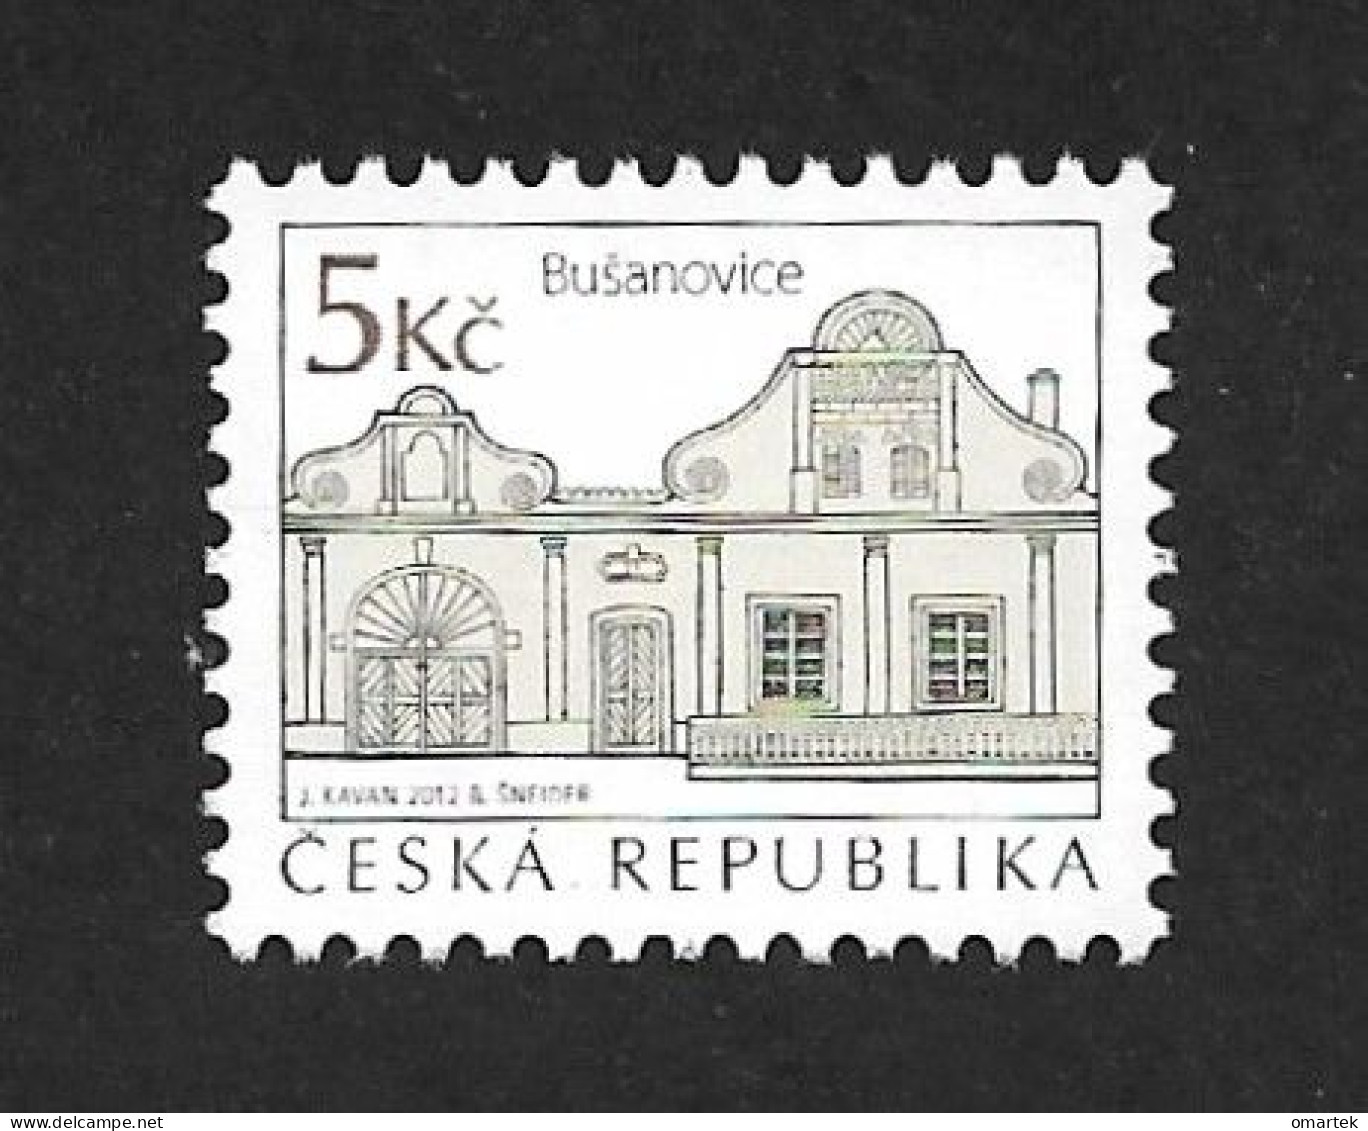 Czech Republic 2012 MNH ** Mi 753 Sc 3558 Folk Architecture - Busanovice.Tschechische Republik - Ungebraucht